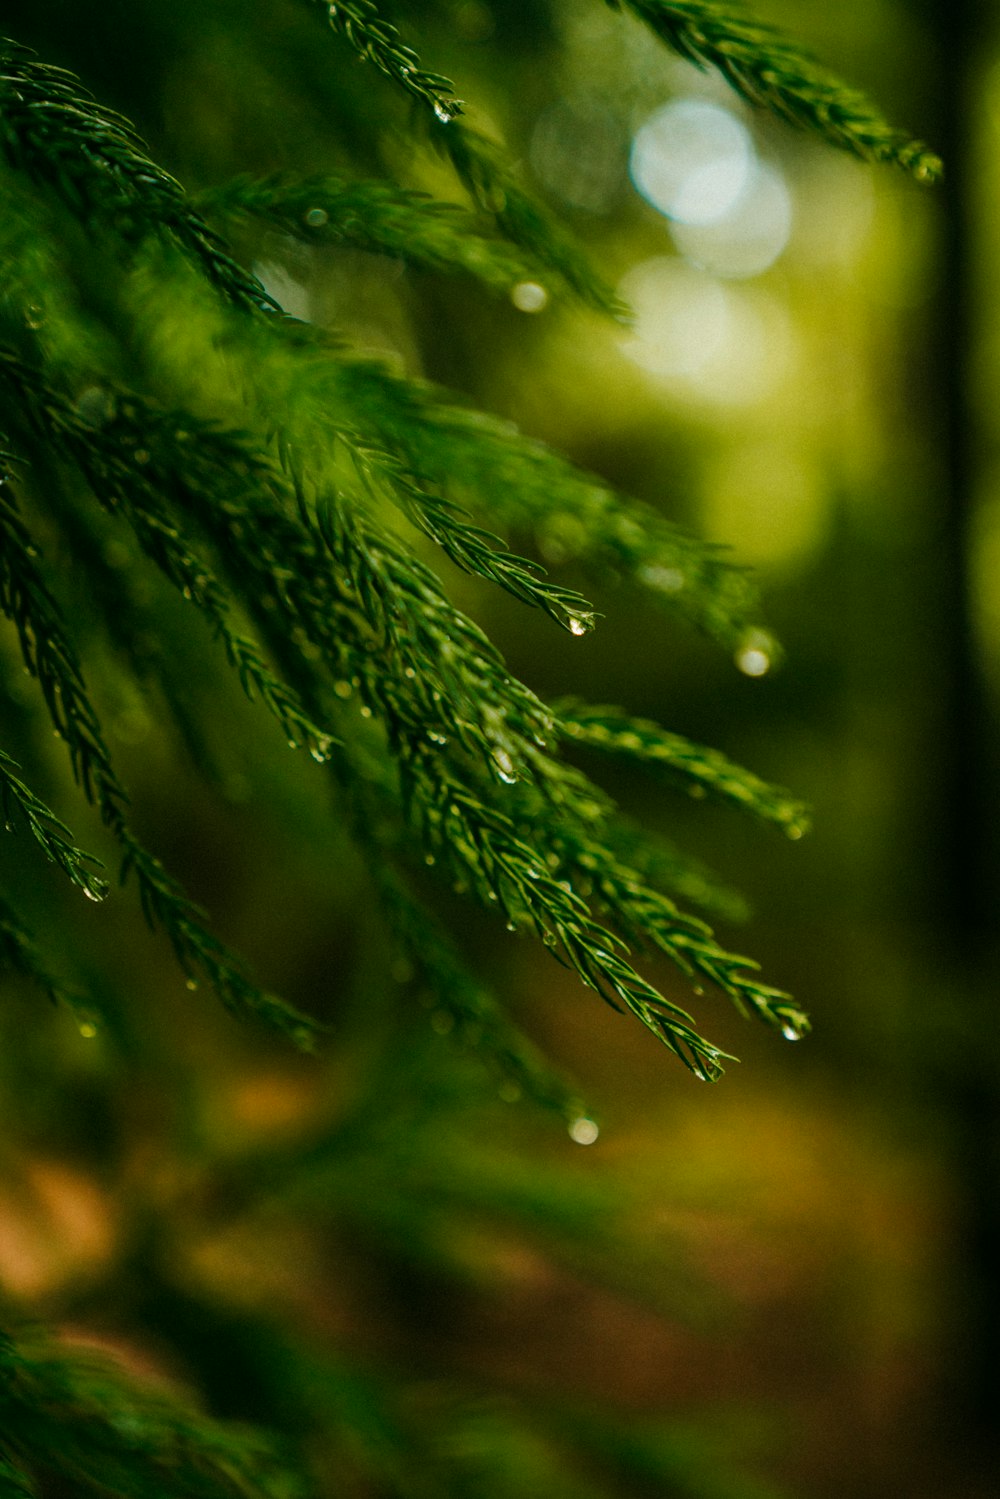 water dews on pine leaves